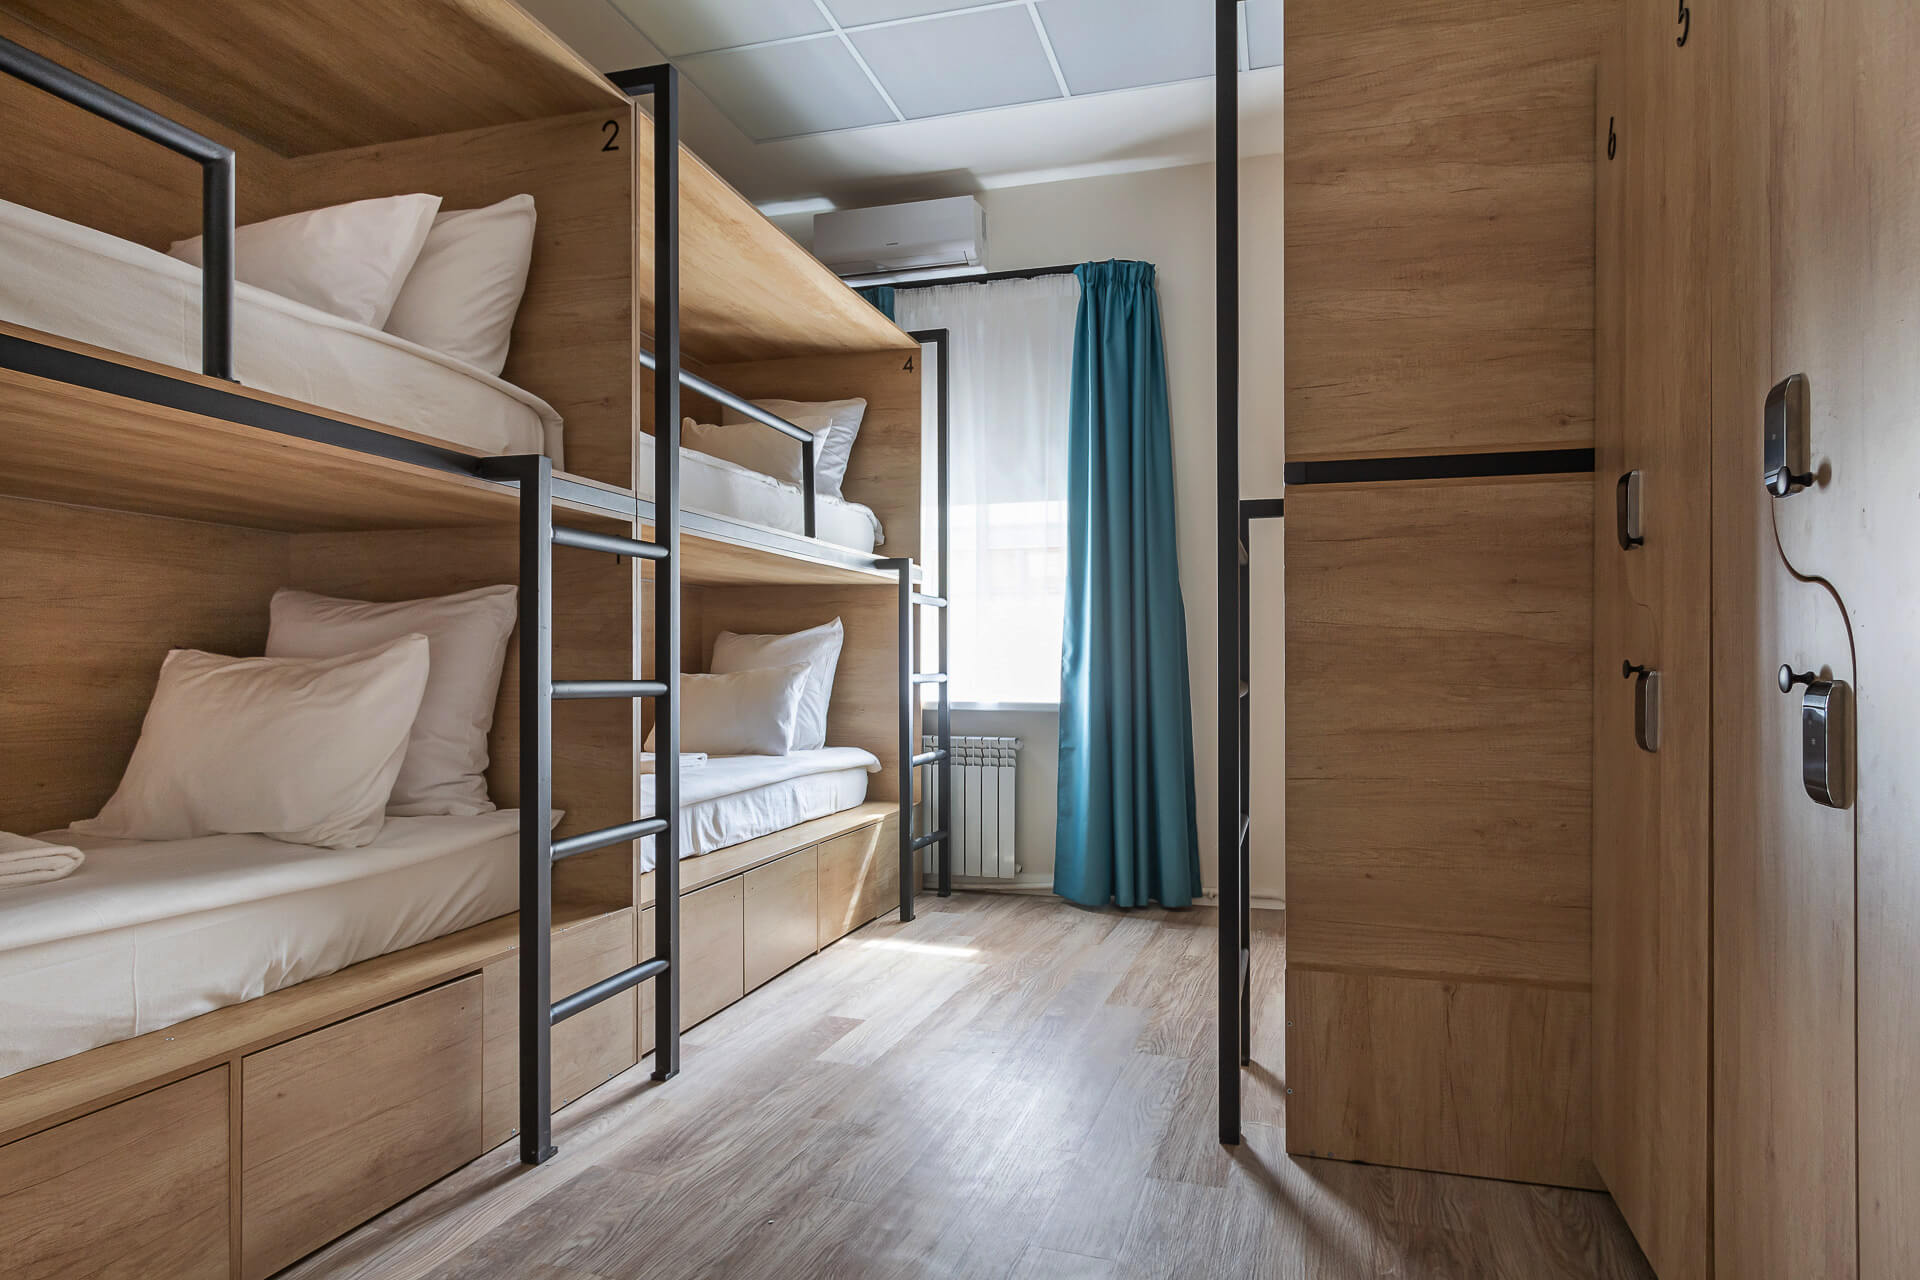 Светло и просторно. Деревянные кровати и шкафчики.